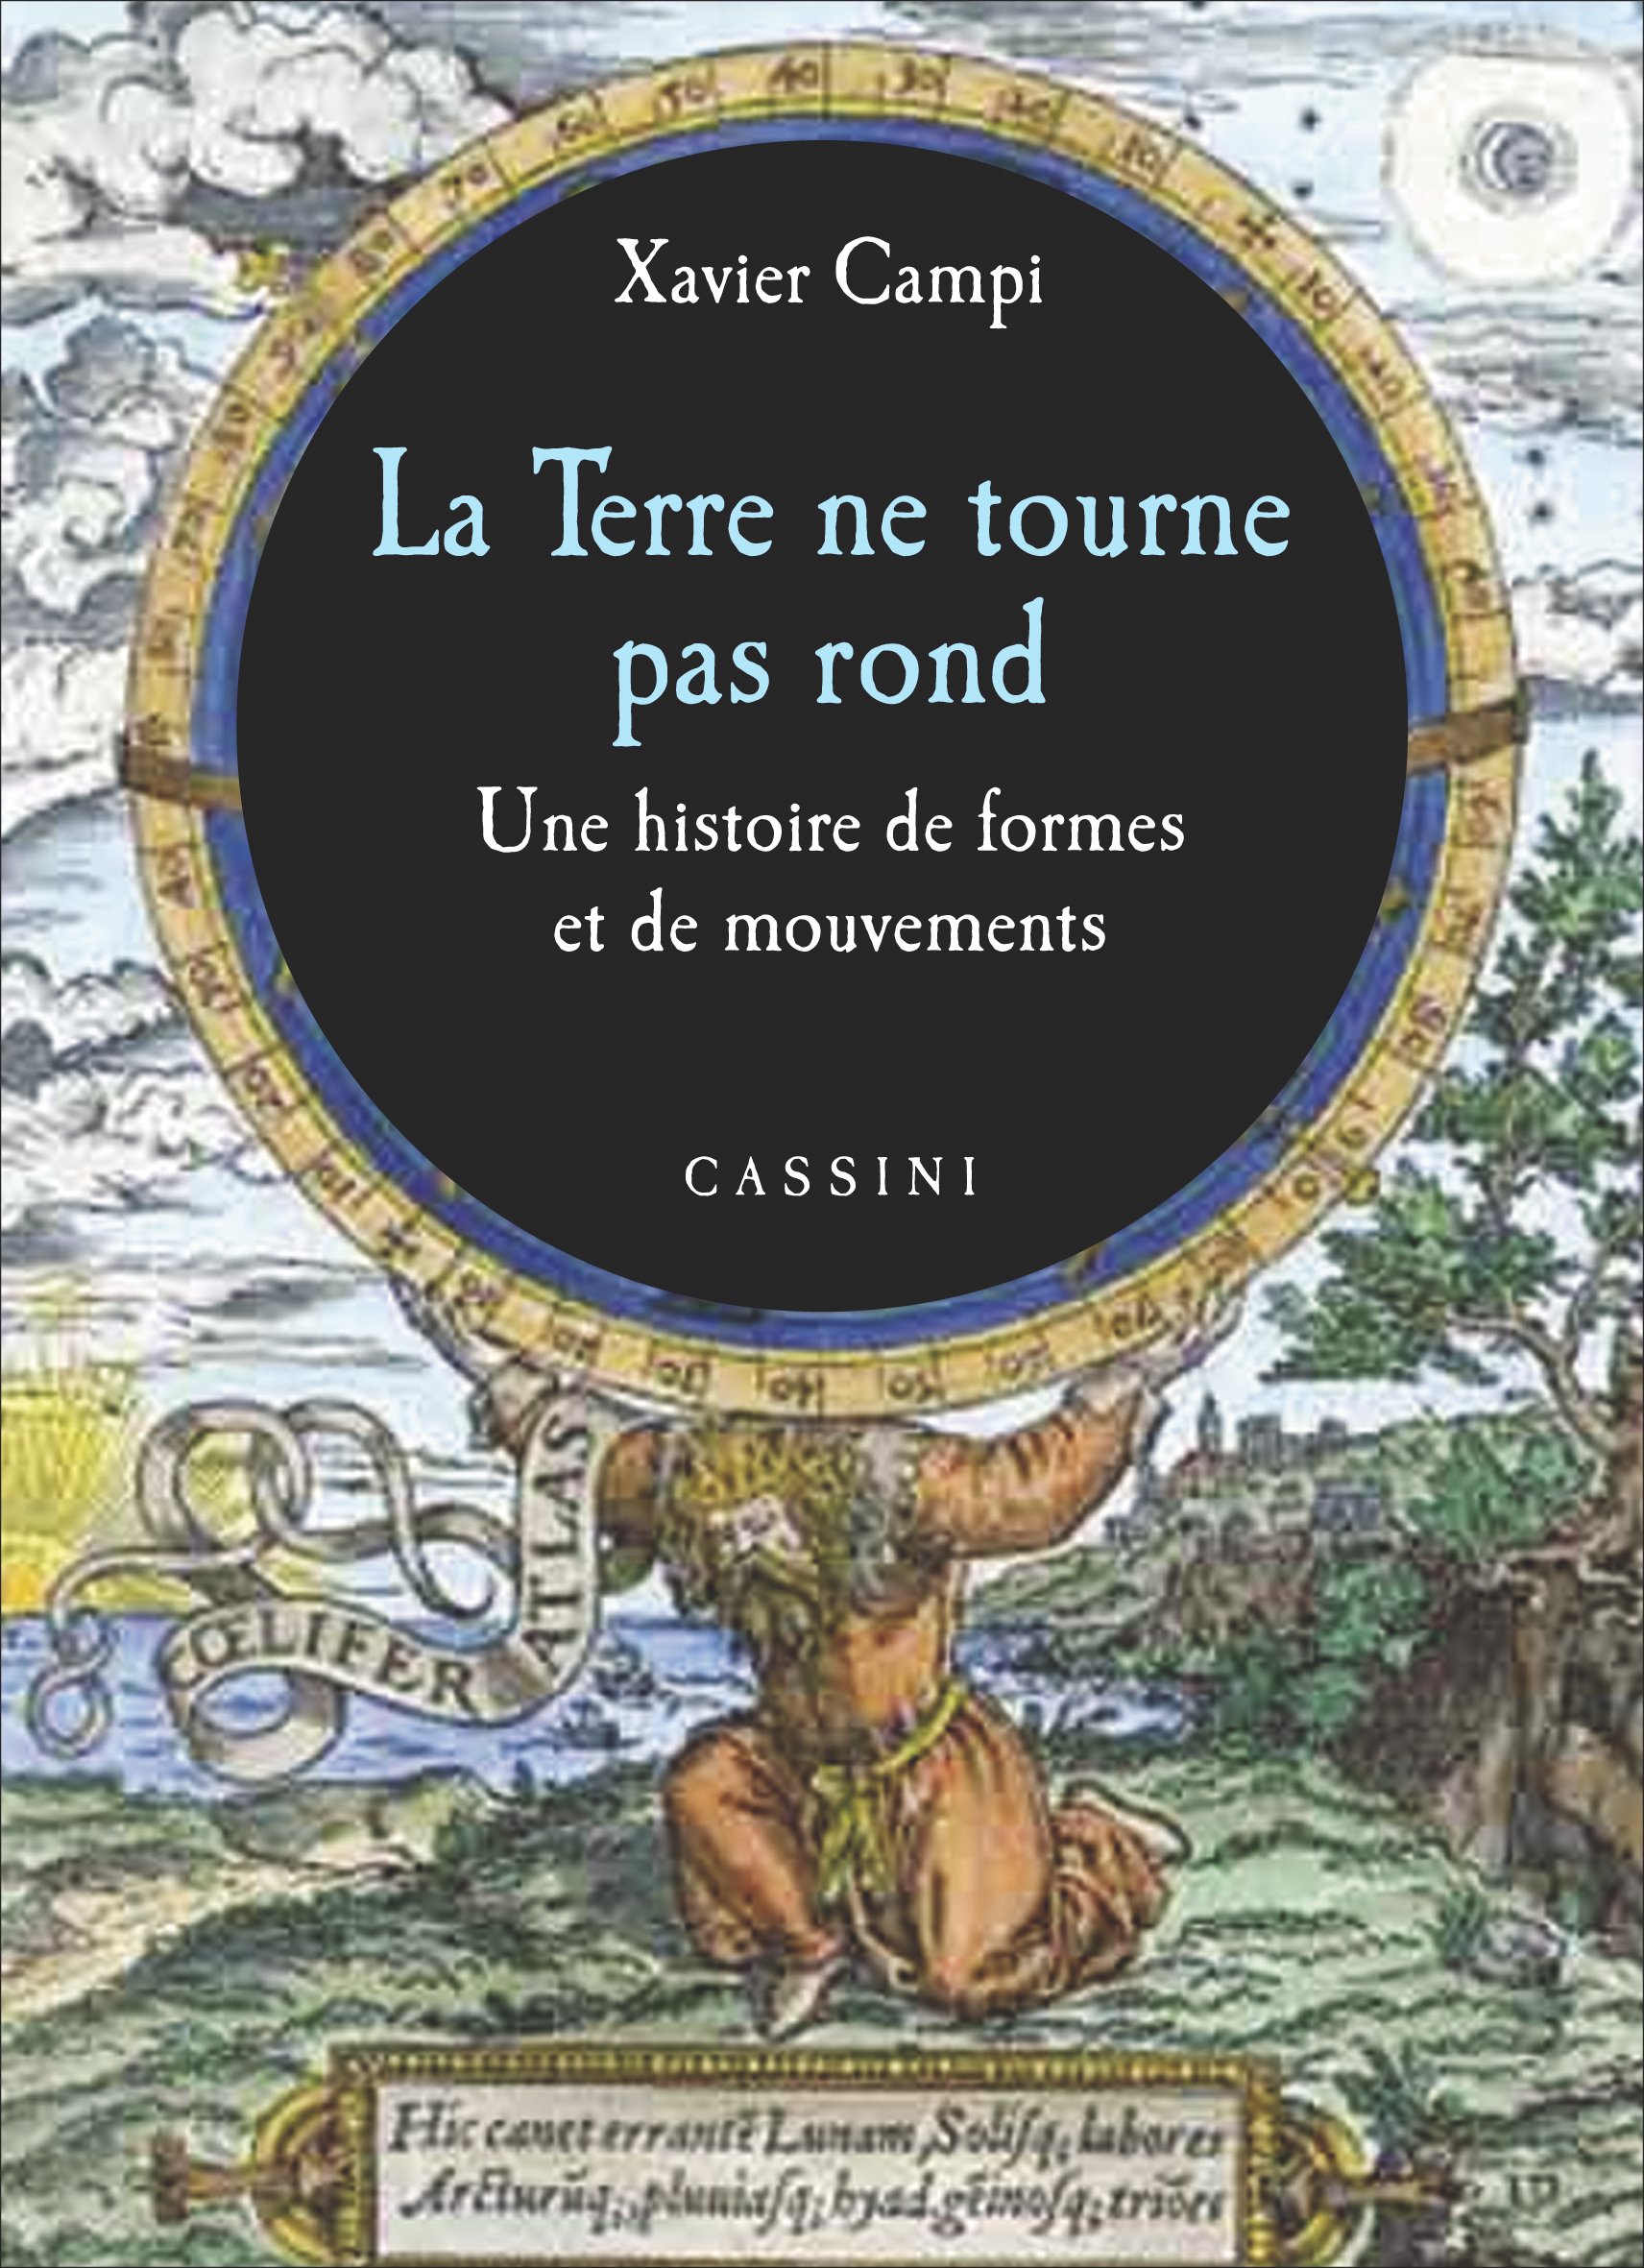 La terre ne tourne pas rond. Une histoire des formes et de mouvements - Cassini, 2014, 309 p.